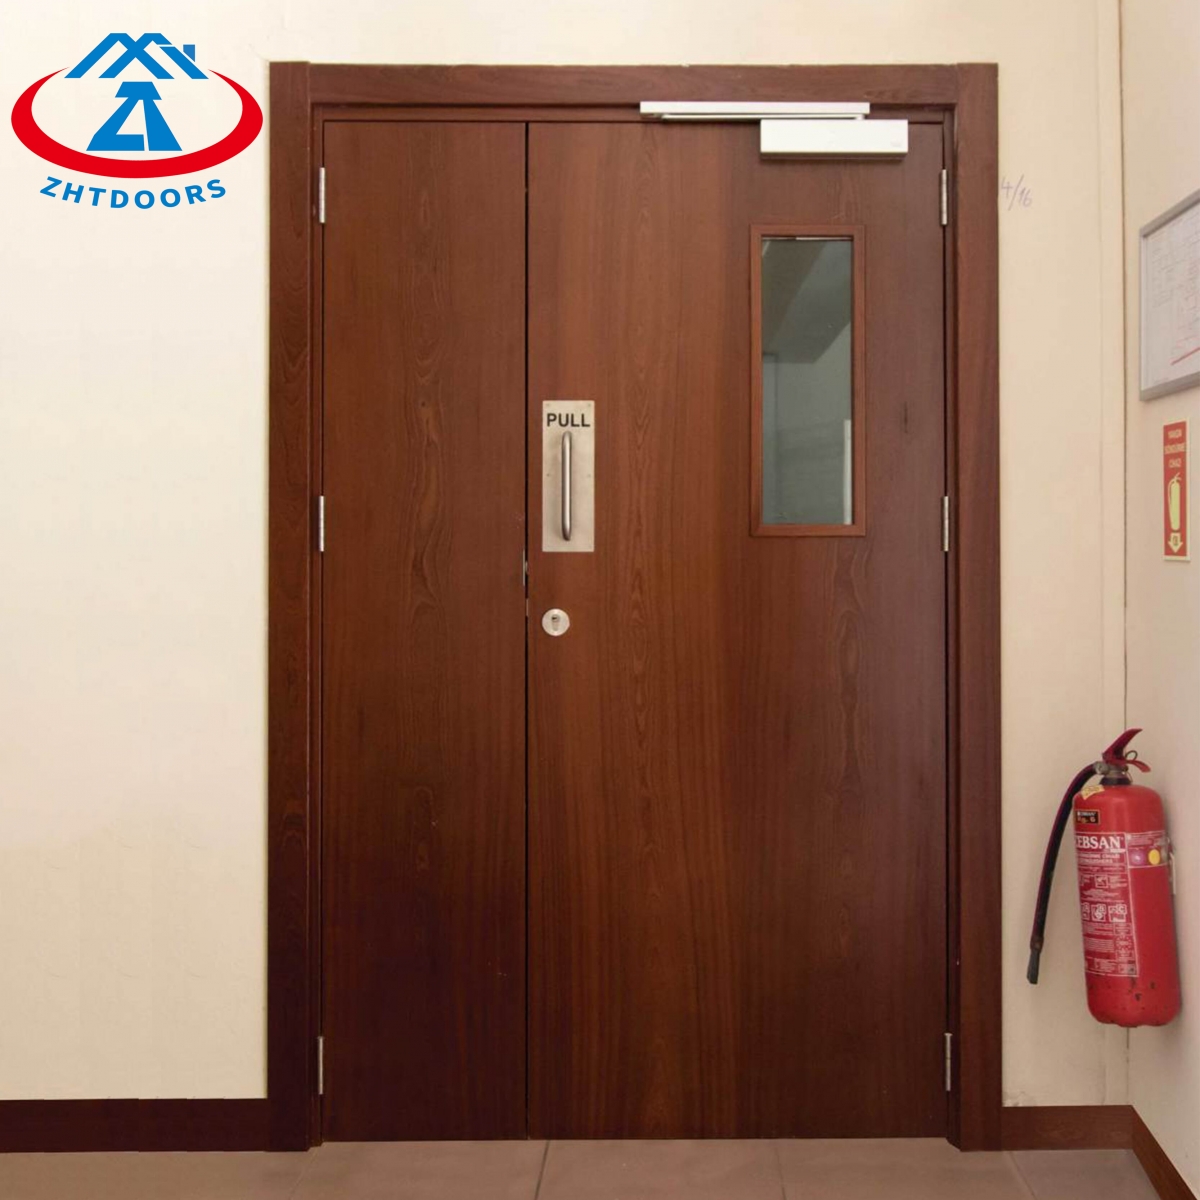 Wooden Fire Door-ZTFIRE Door- Fire Door,Fireproof Door,Fire rated Door,Fire Resistant Door,Steel Door,Metal Door,Exit Door